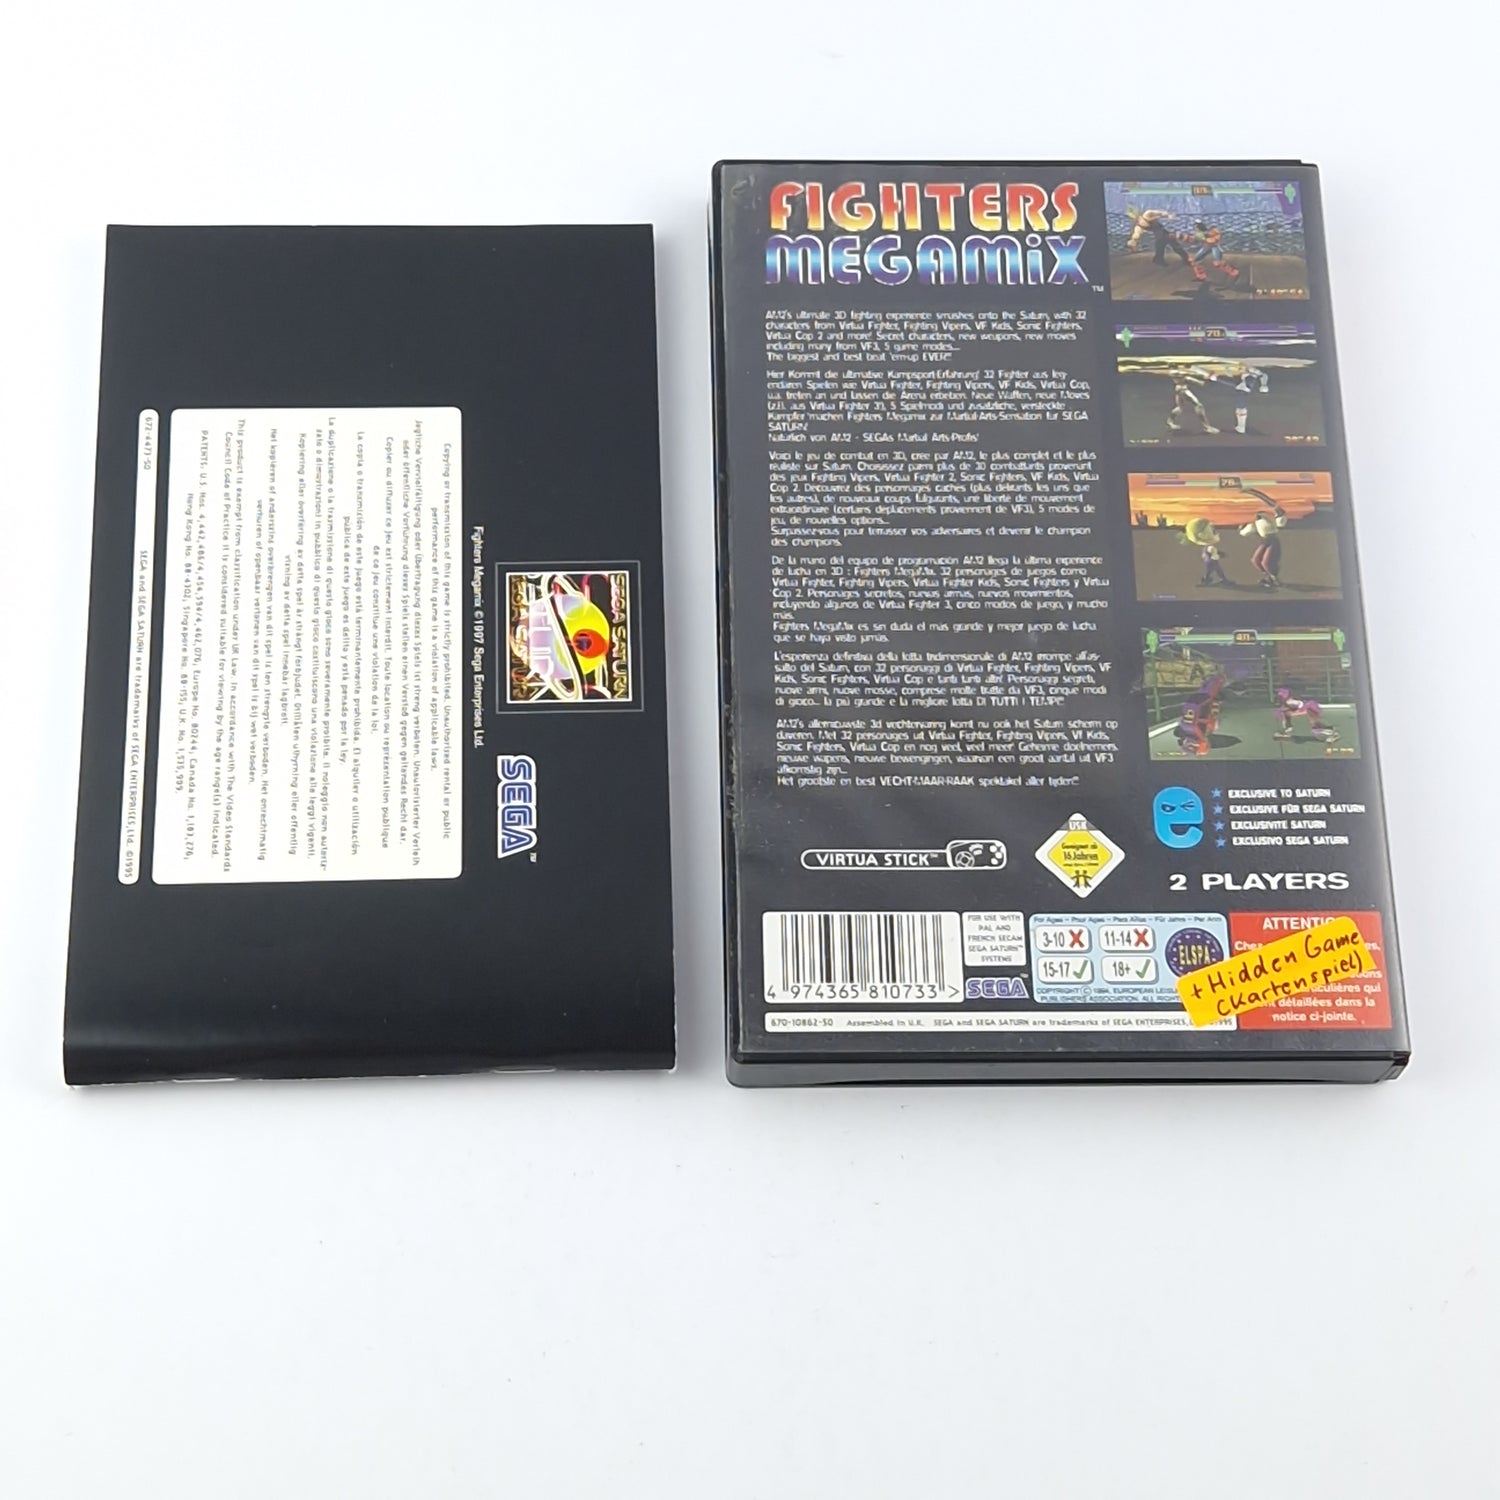 Sega Saturn Game: Fighters Megamix - OVP Instructions PAL Disk / PAL